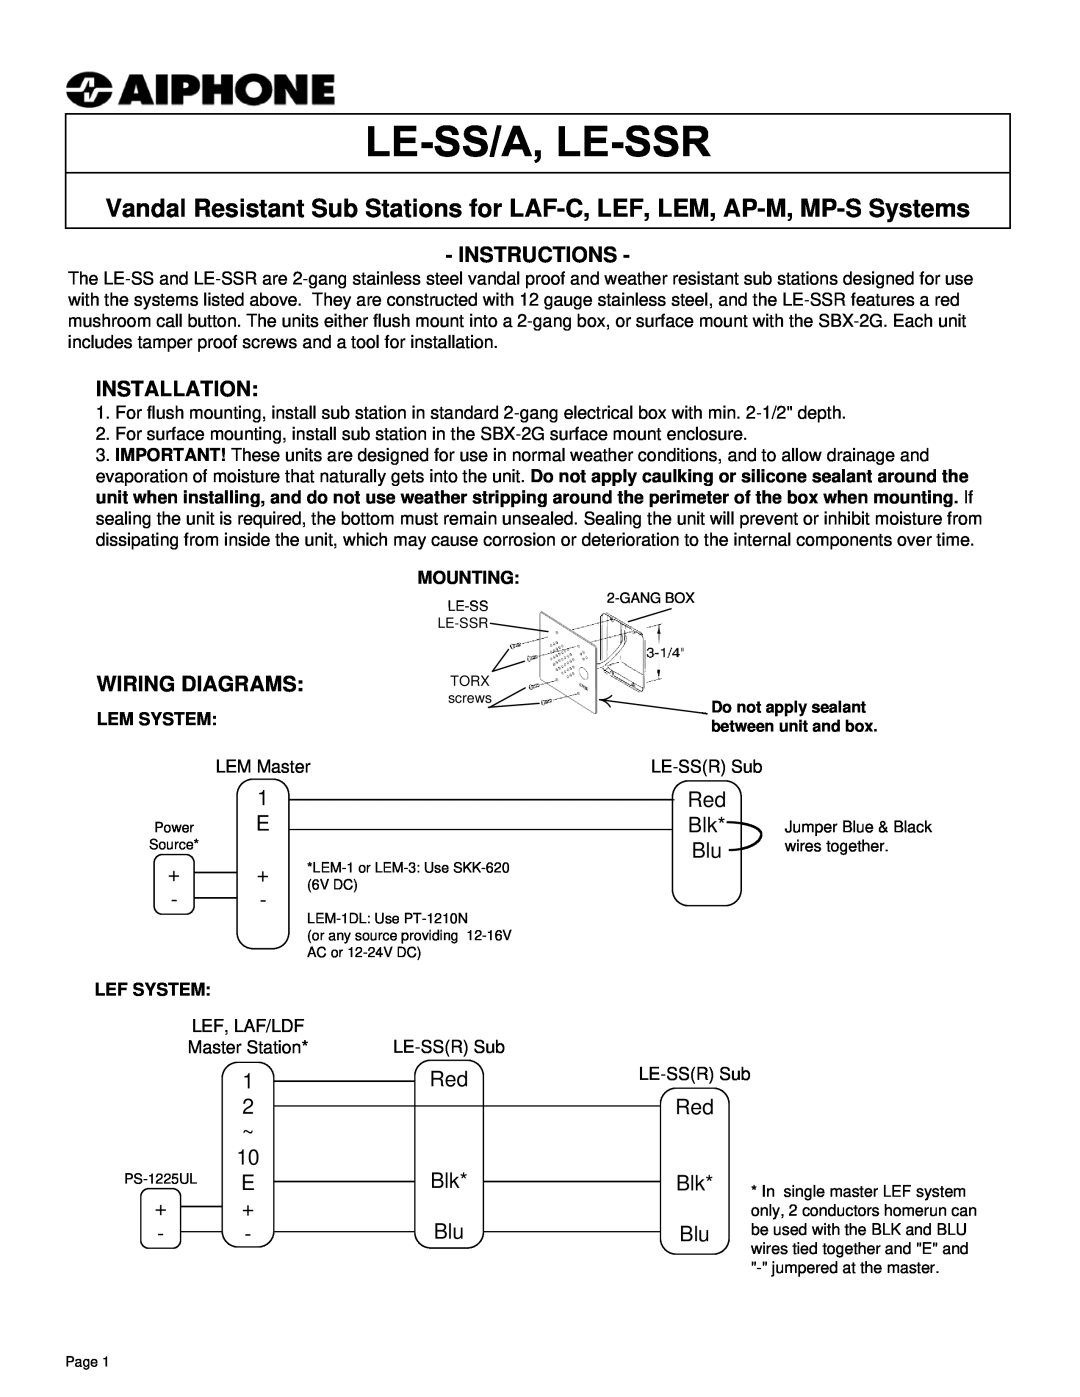 Aiphone NA-T/A manual 